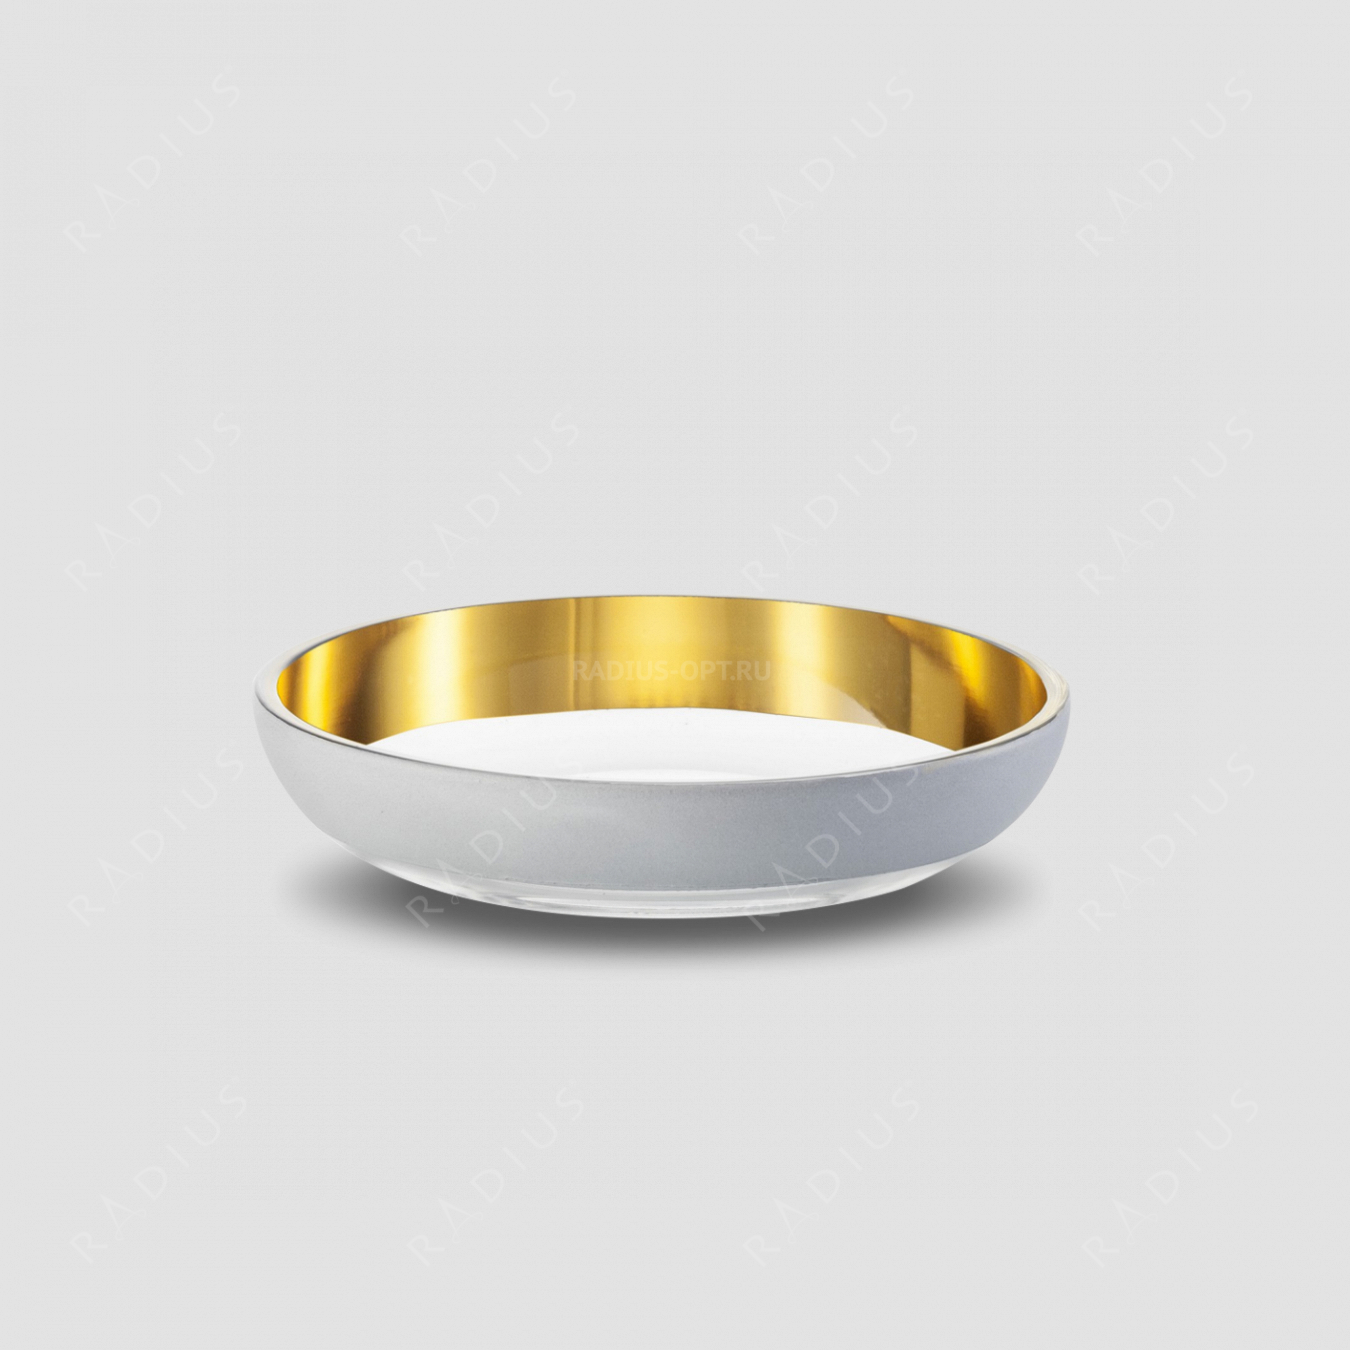 Чаша глубокая Weiss, диаметр: 18 см, материал: бессвинцовый хрусталь, цвет: белый/золото, серия Cosmo, EISCH, Германия